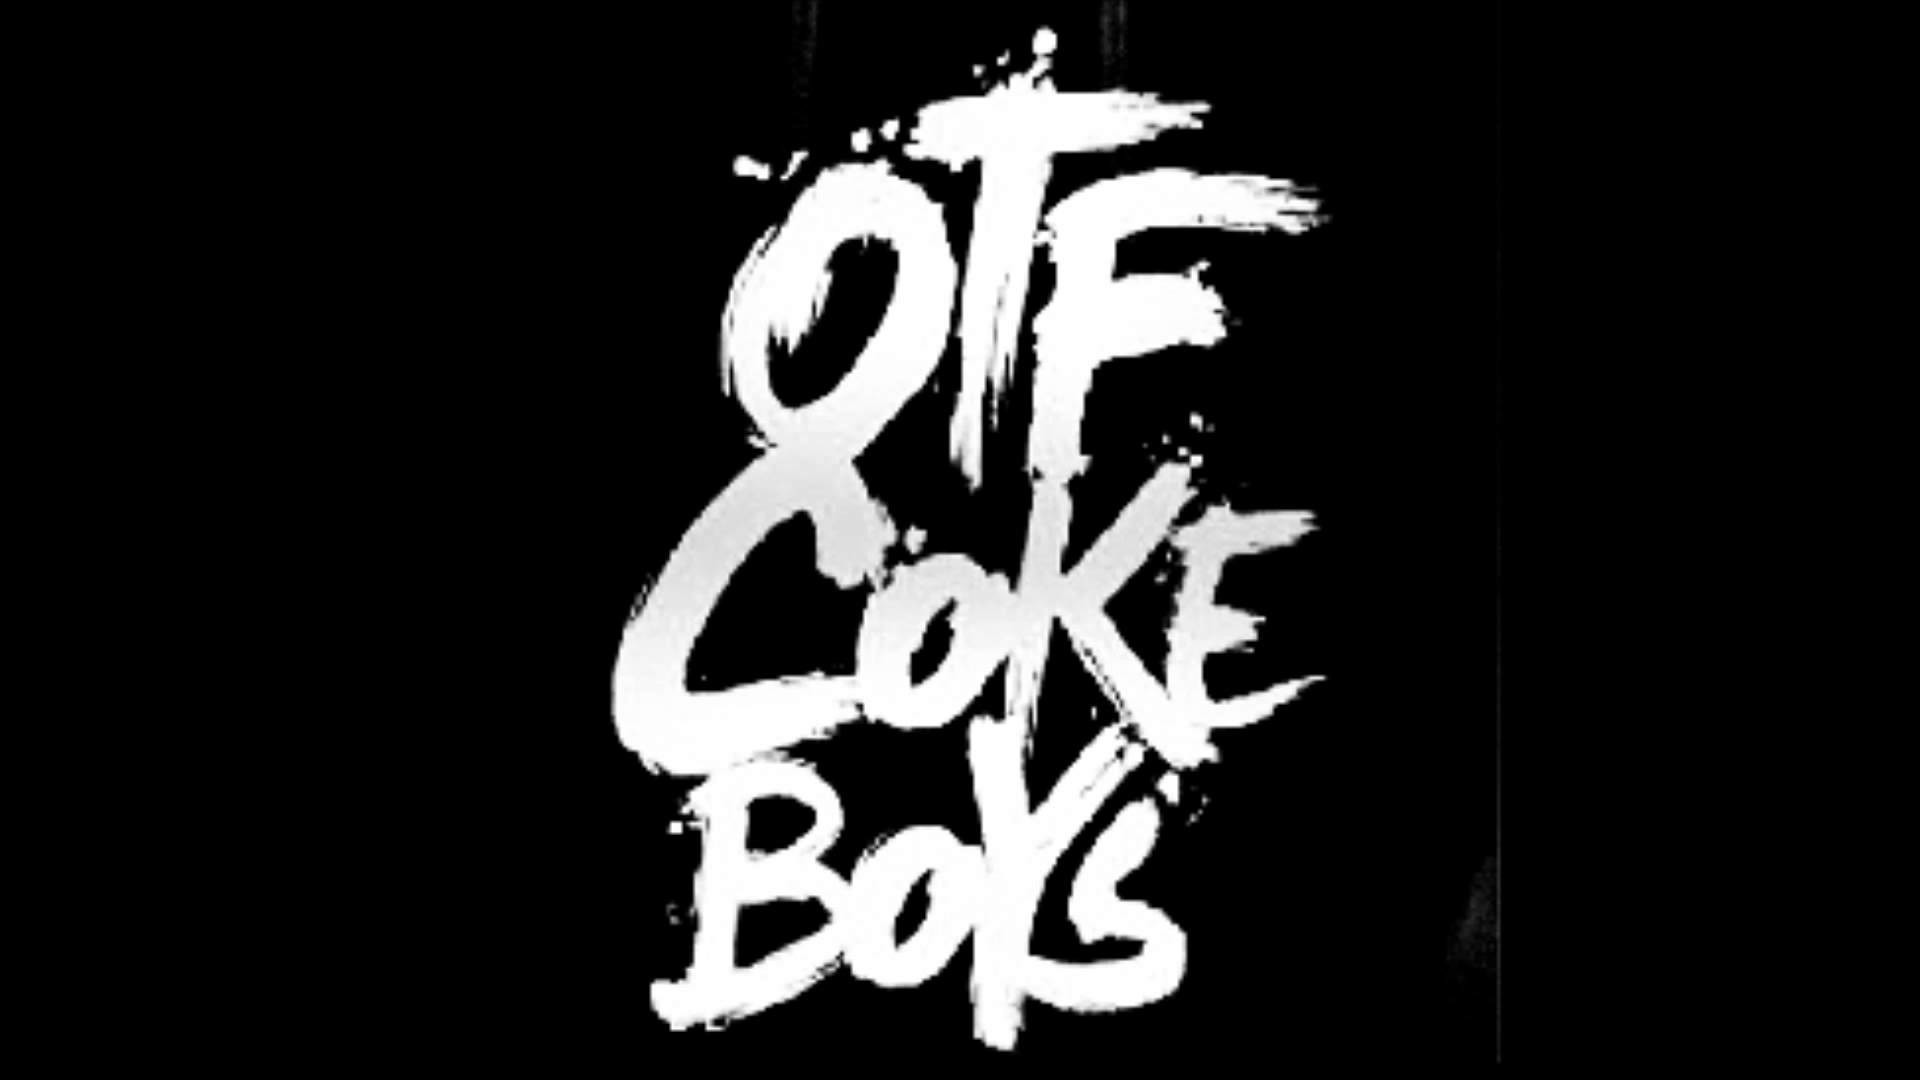 1920x1080 Coke Boys Wallpaper